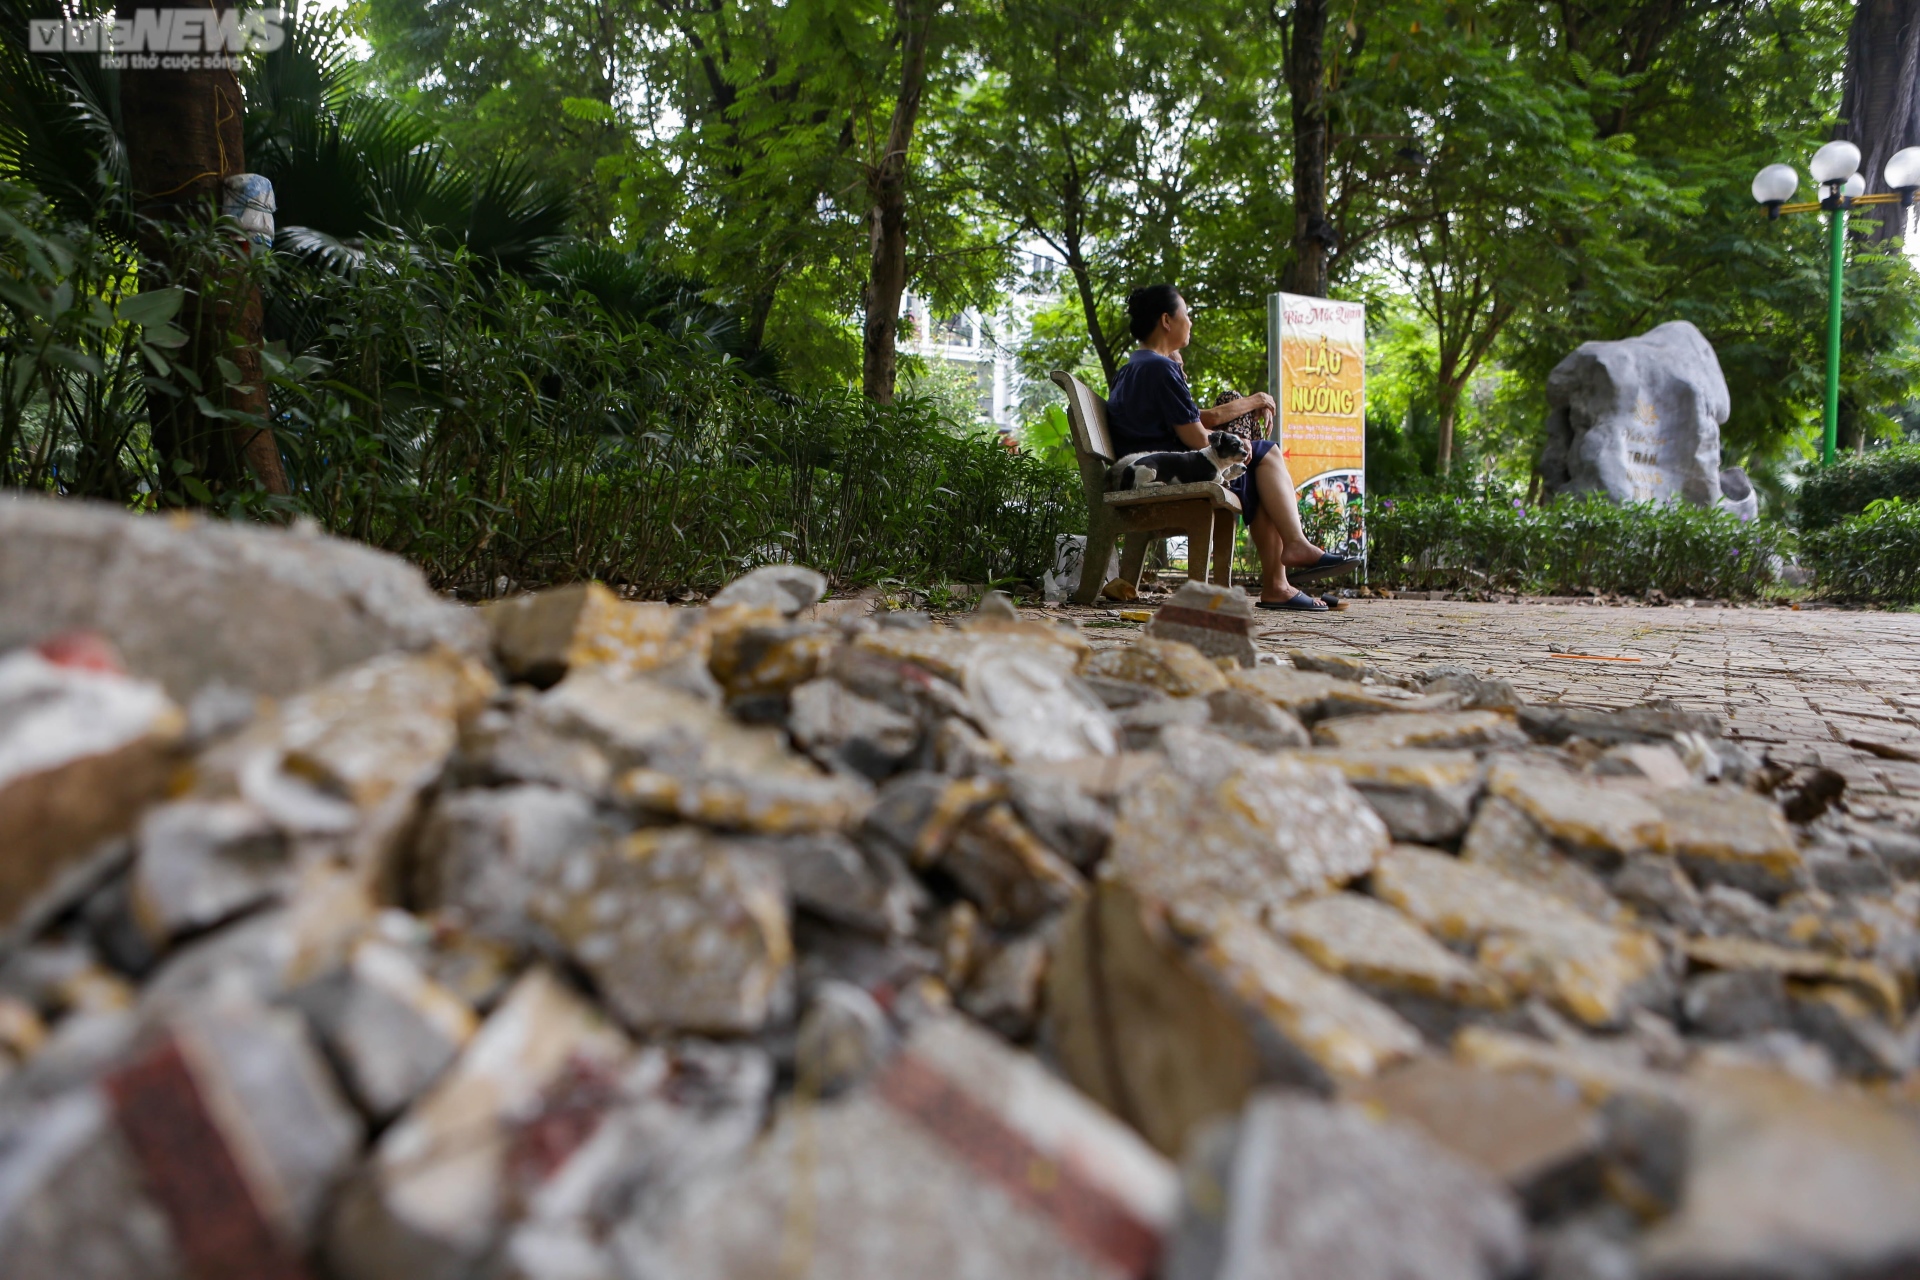 Vườn hoa 52 tỷ đồng ở Hà Nội xuống cấp trầm trọng, thành nơi đổ rác - Ảnh 9.